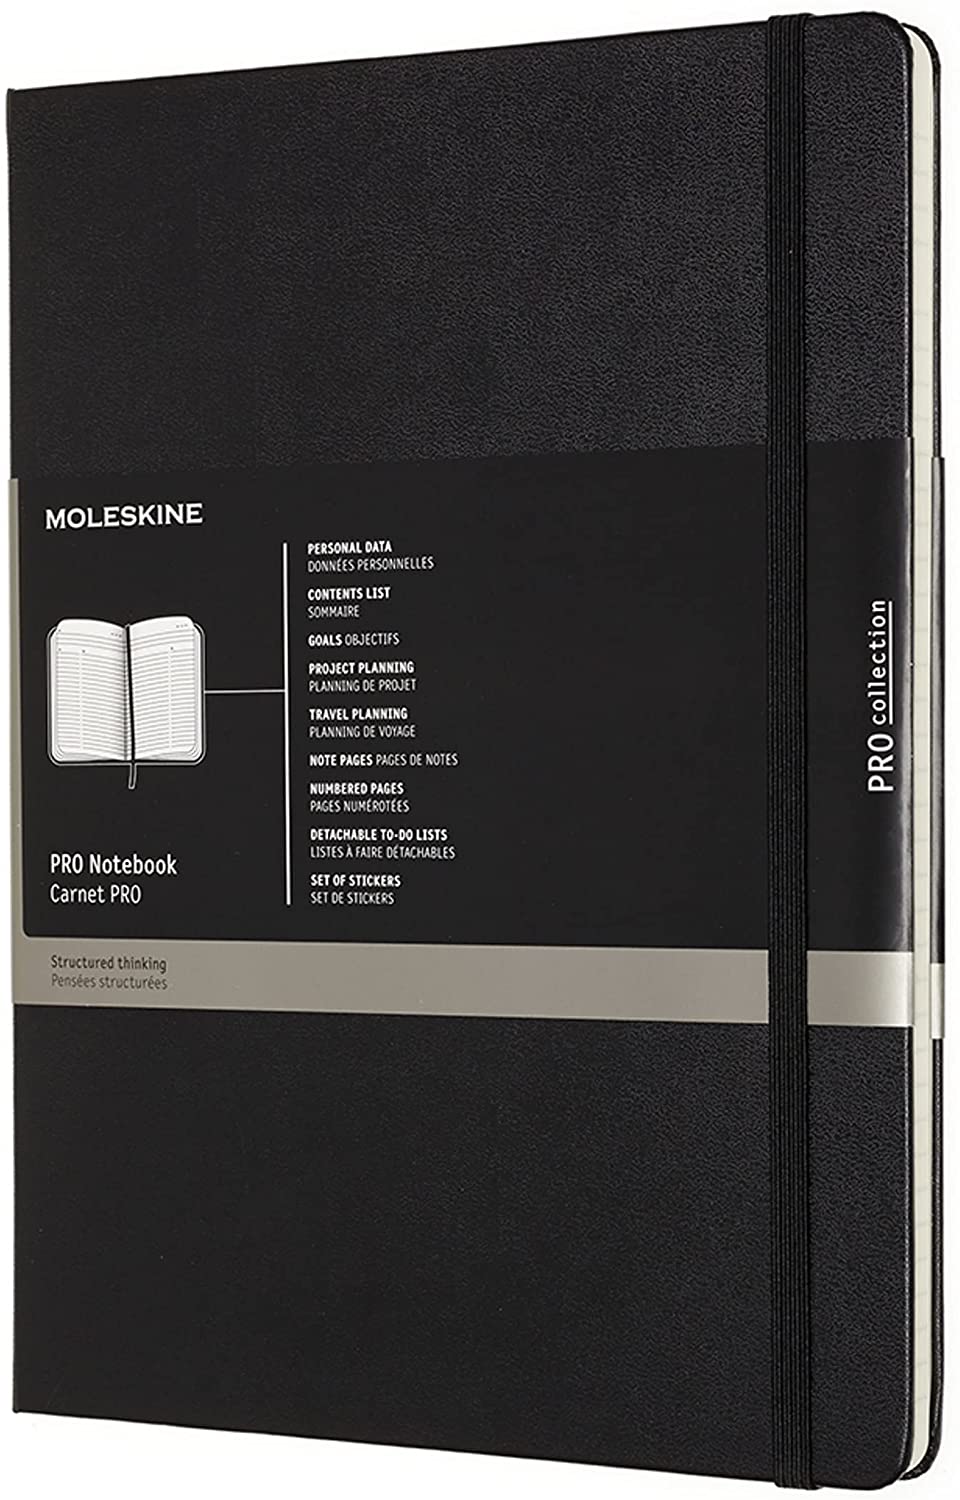 Carnet - Moleskine Pro - Hard Cover, X-Large - Black | Moleskine image